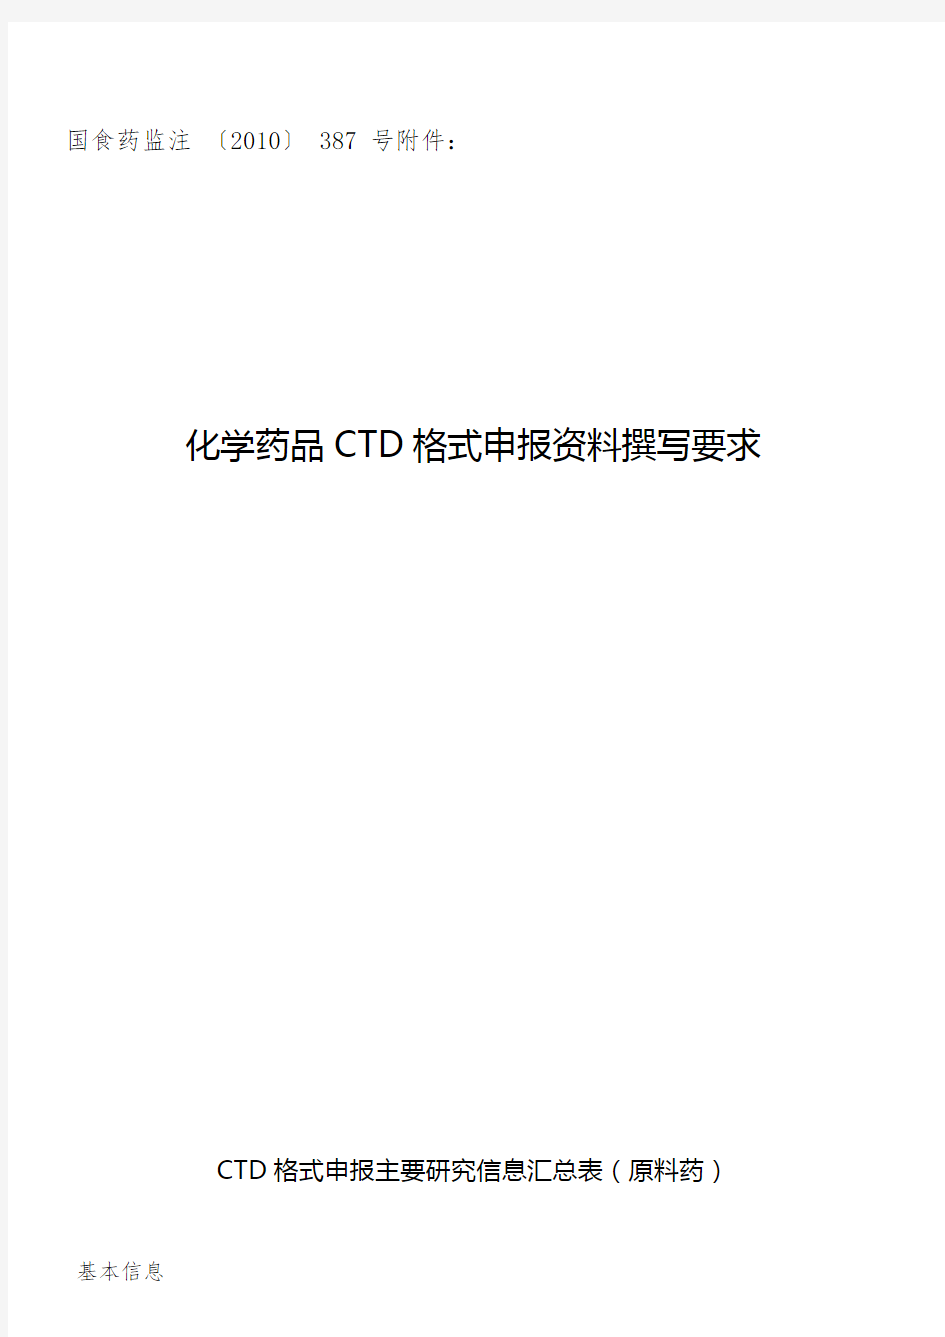 化学药品CTD格式申报撰写要求